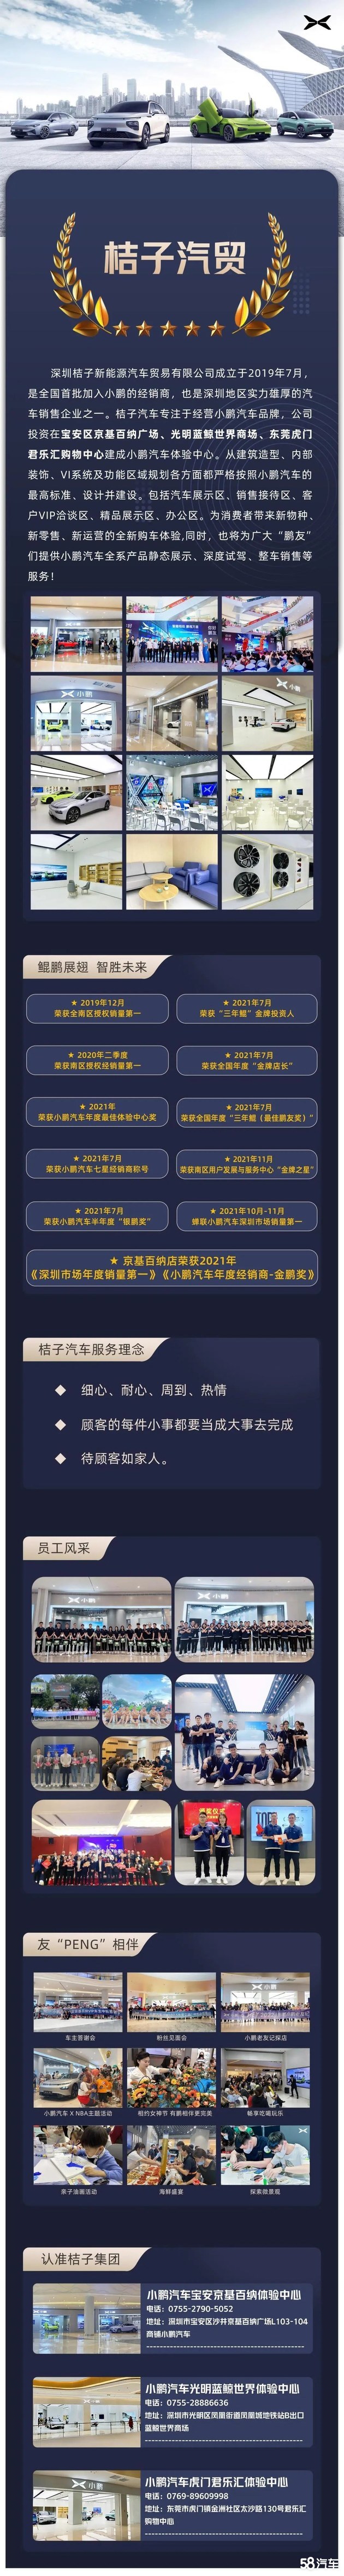 小鹏G9展车到深圳光明蓝鲸世界体验中心